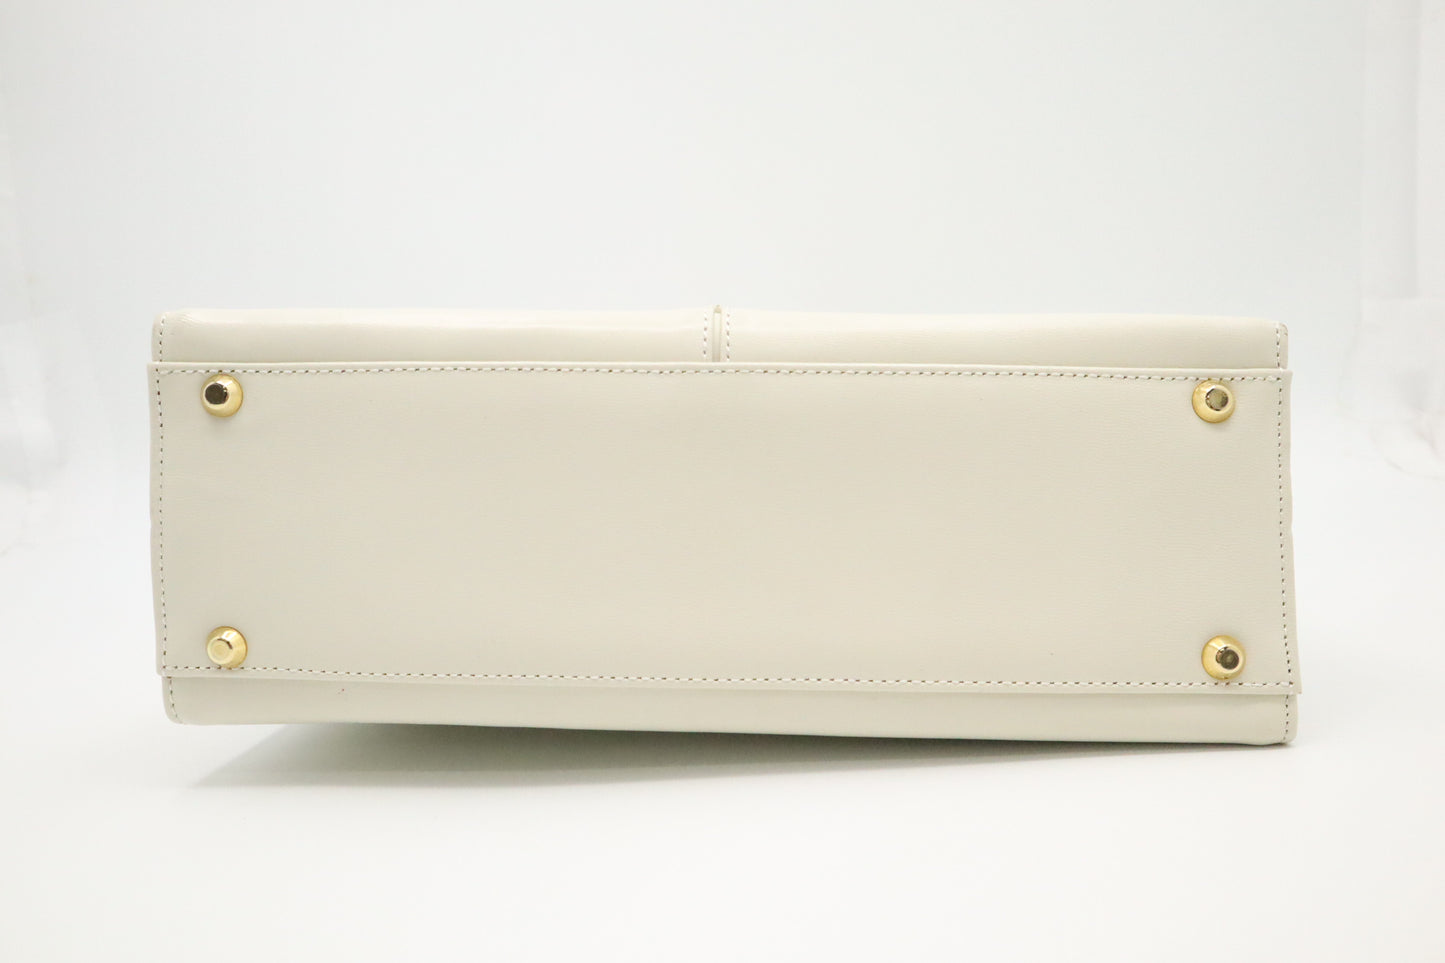 YSL Saint Laurent Handbag in White Leather